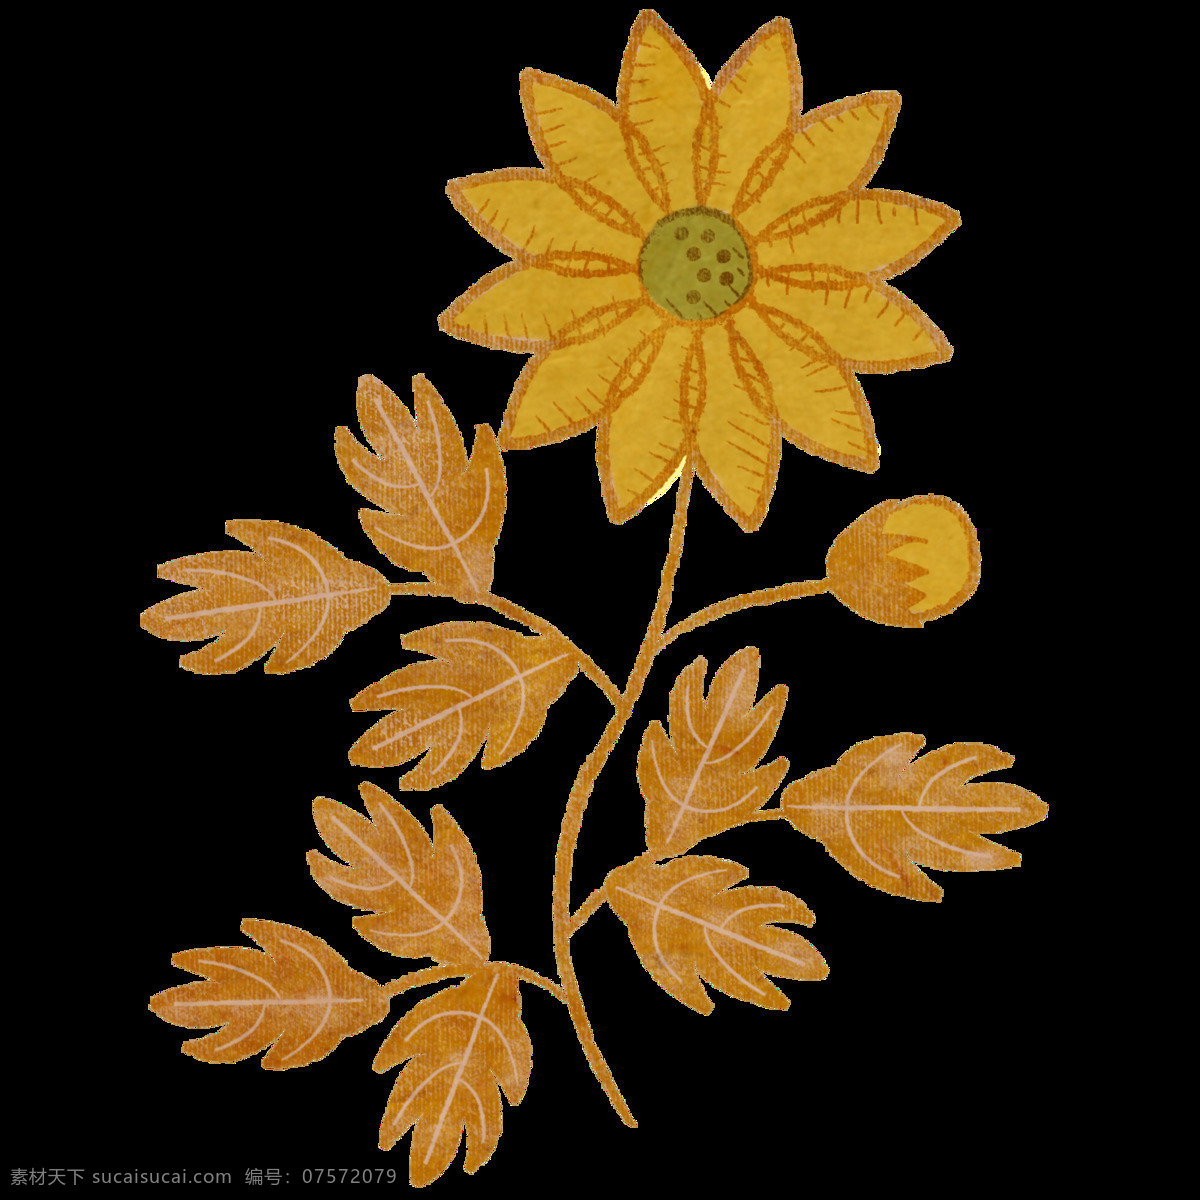 美丽 土黄色 花朵 手绘 菊花 装饰 元素 手绘植物 叶子 装饰元素